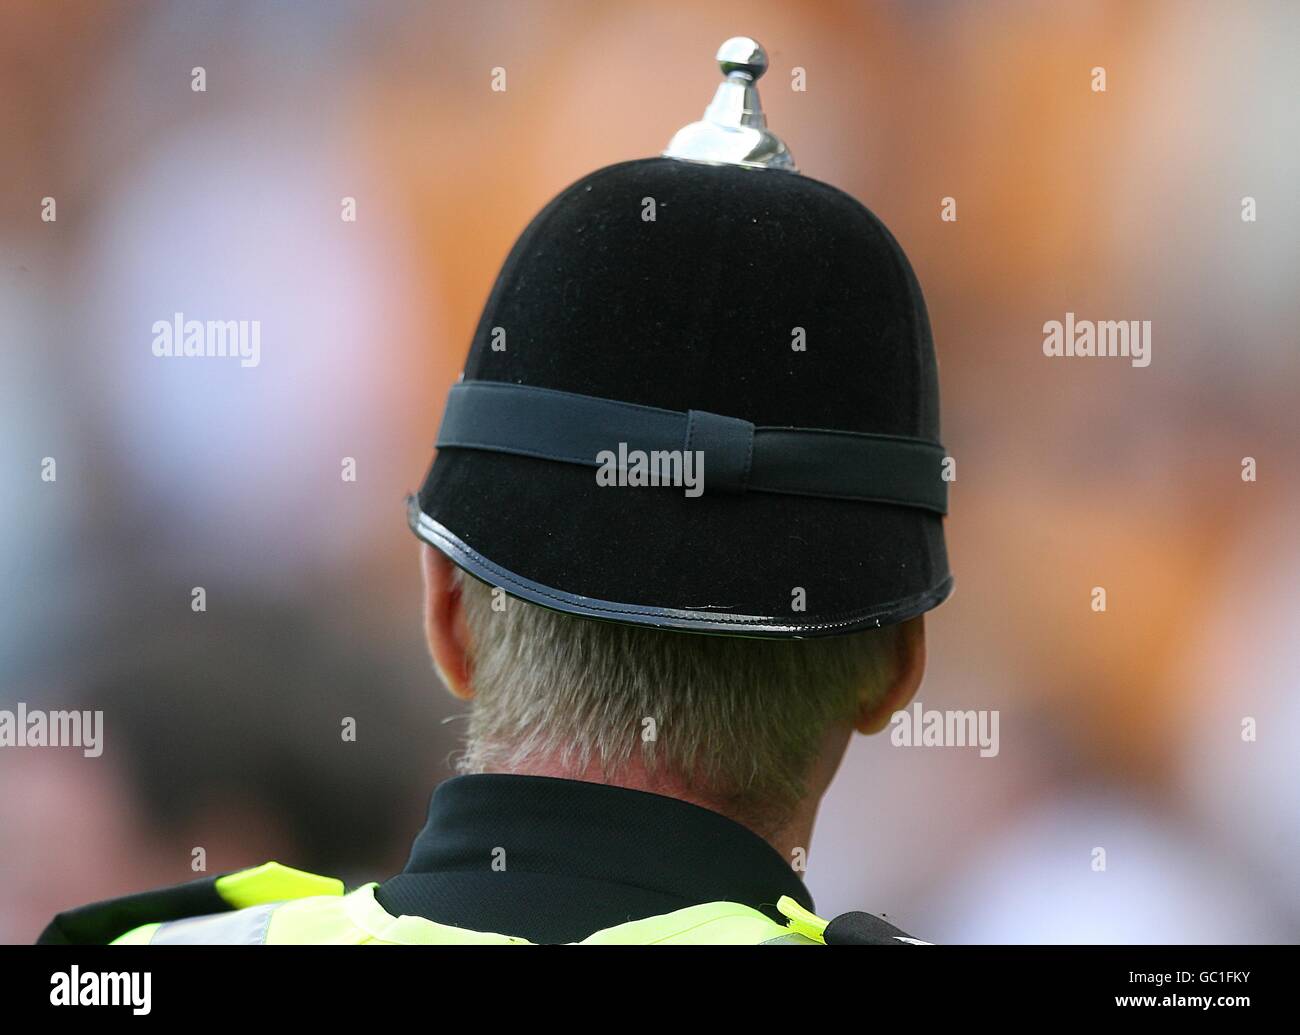 Fútbol - Barclays Premier League - Hull City contra Bolton Wanderers - KC Stadium. Vista general de la parte posterior del casco de un policía. Foto de stock